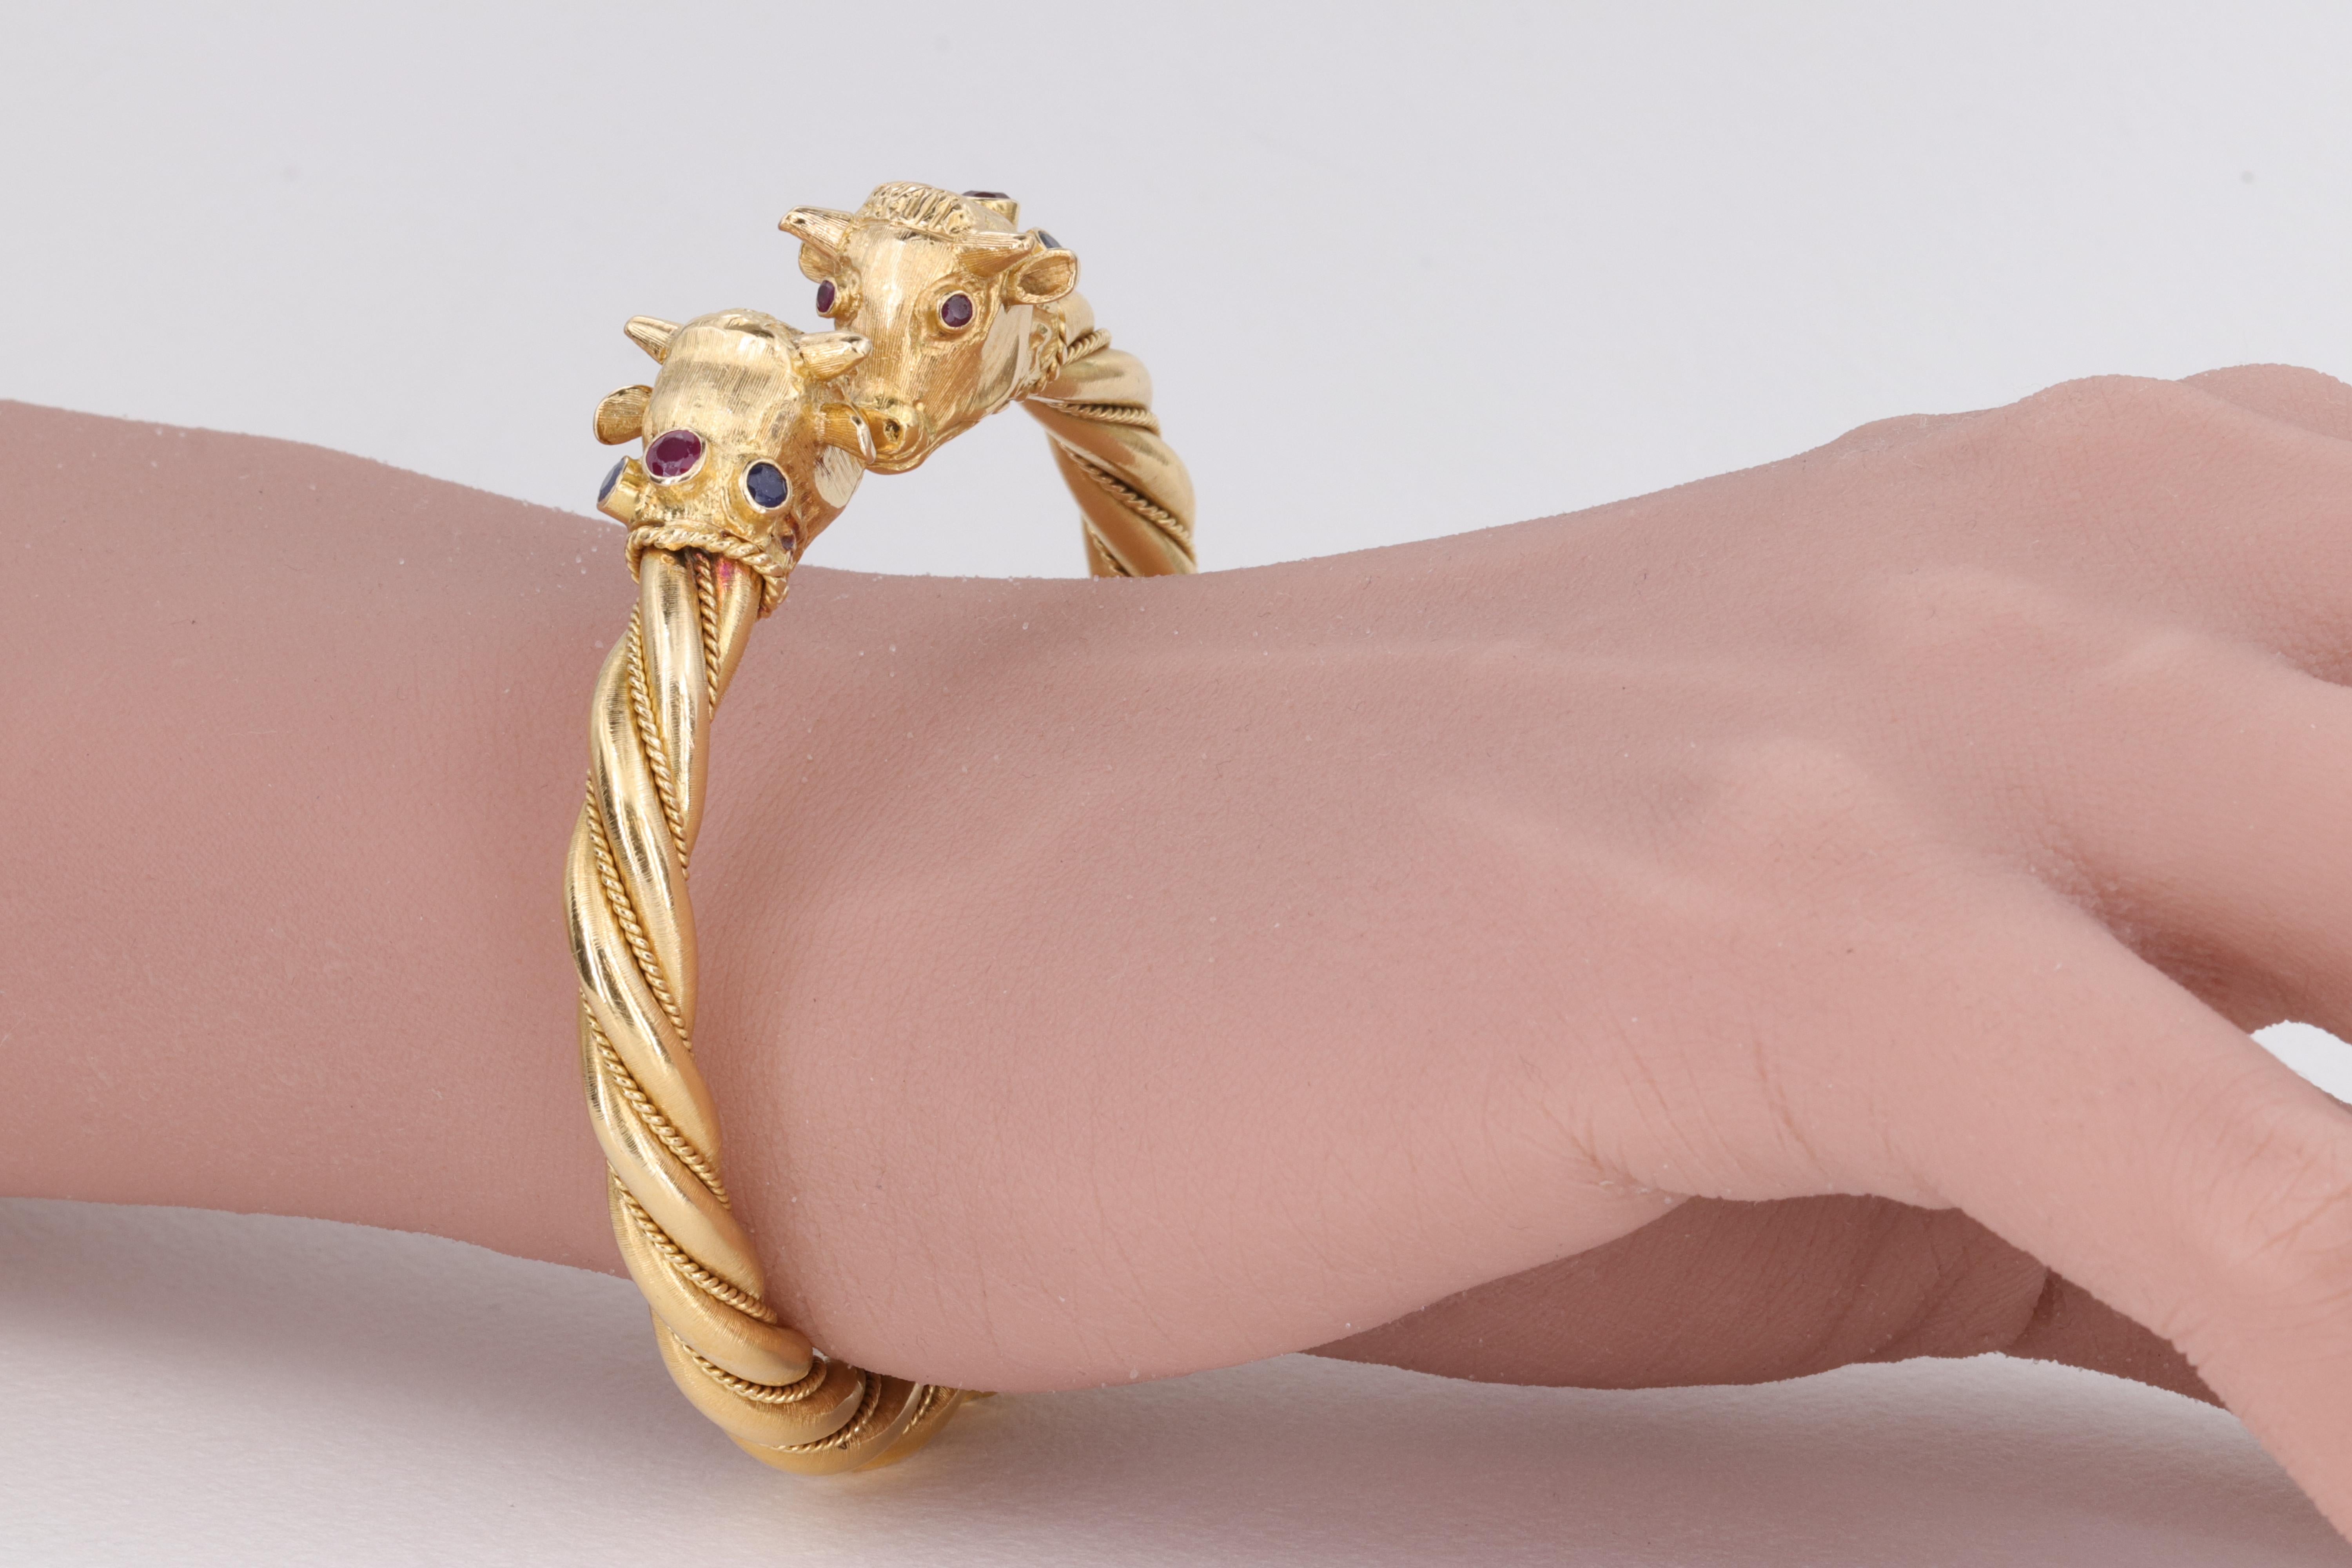 Un bracelet bangle extrêmement bien fait par l'iconique créateur de bijoux grec Ilias Lalaounis, ce bangle représente 2 têtes de taureau au sommet d'un bangle articulé en or jaune 18 carats texturé et torsadé. Les taureaux sont ornés d'yeux en rubis